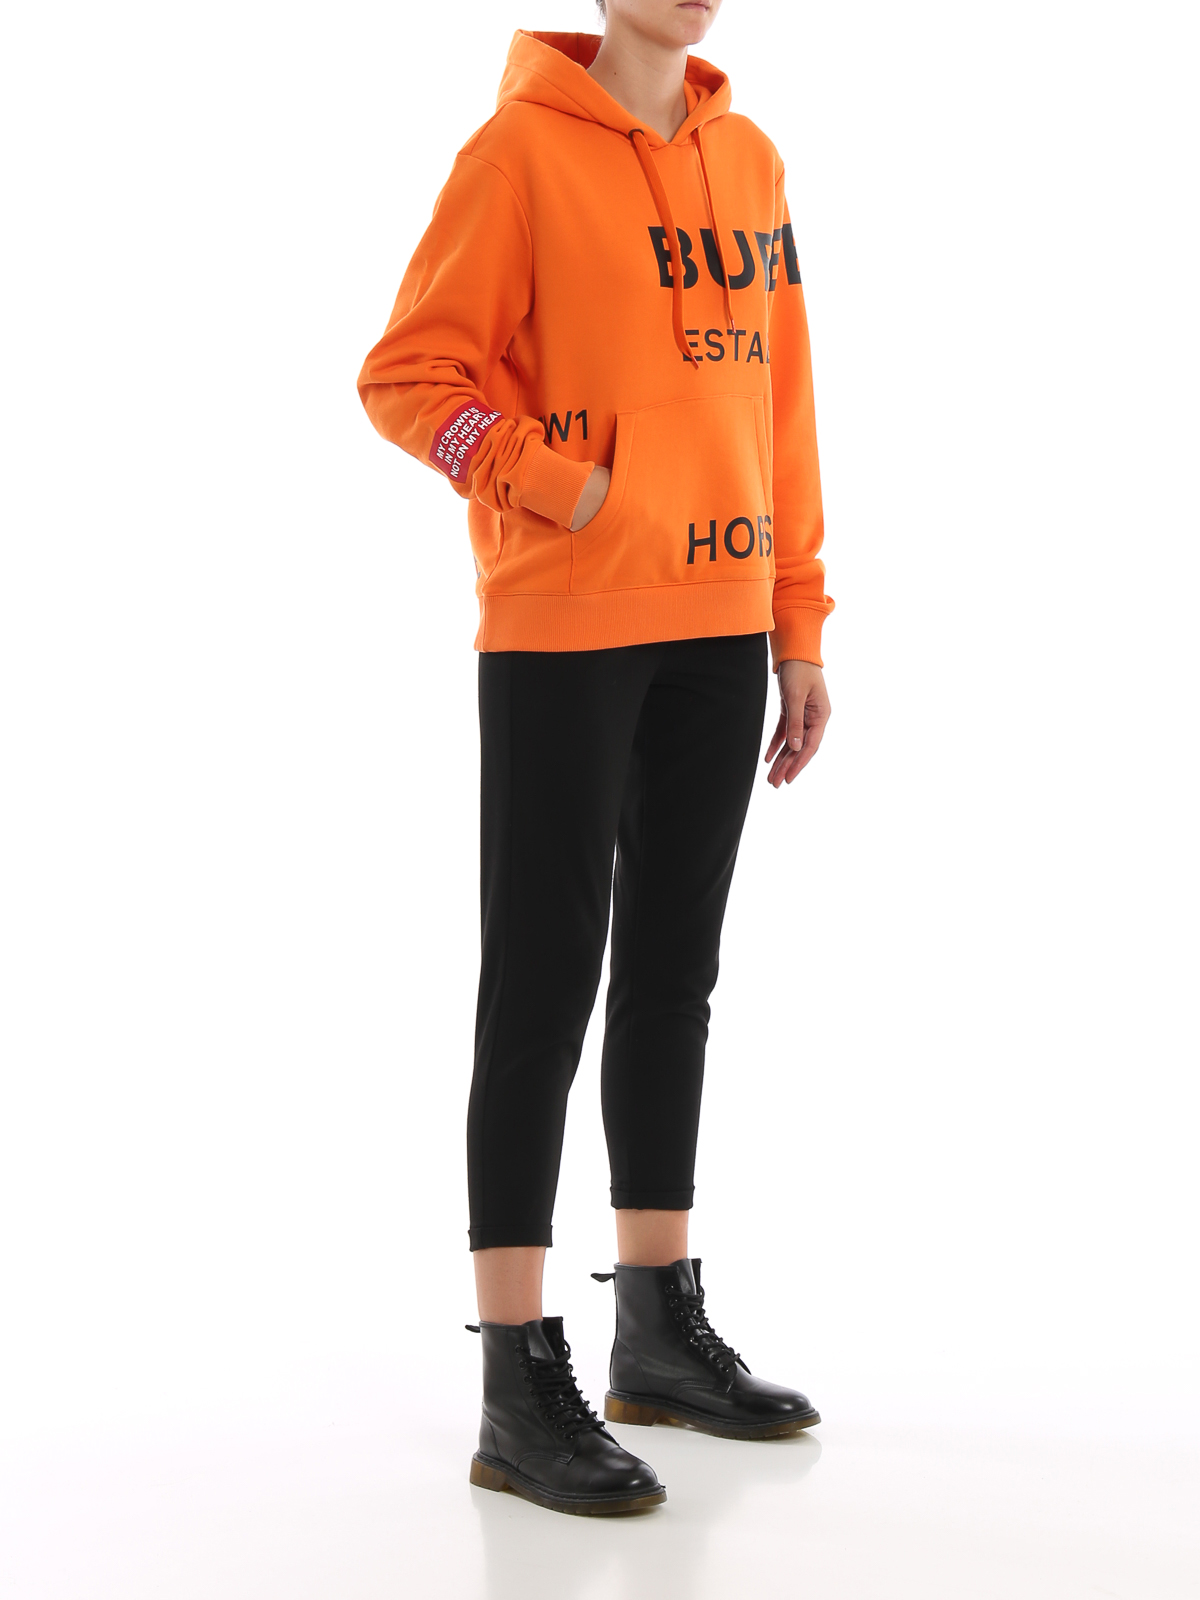 burberry orange hoodie